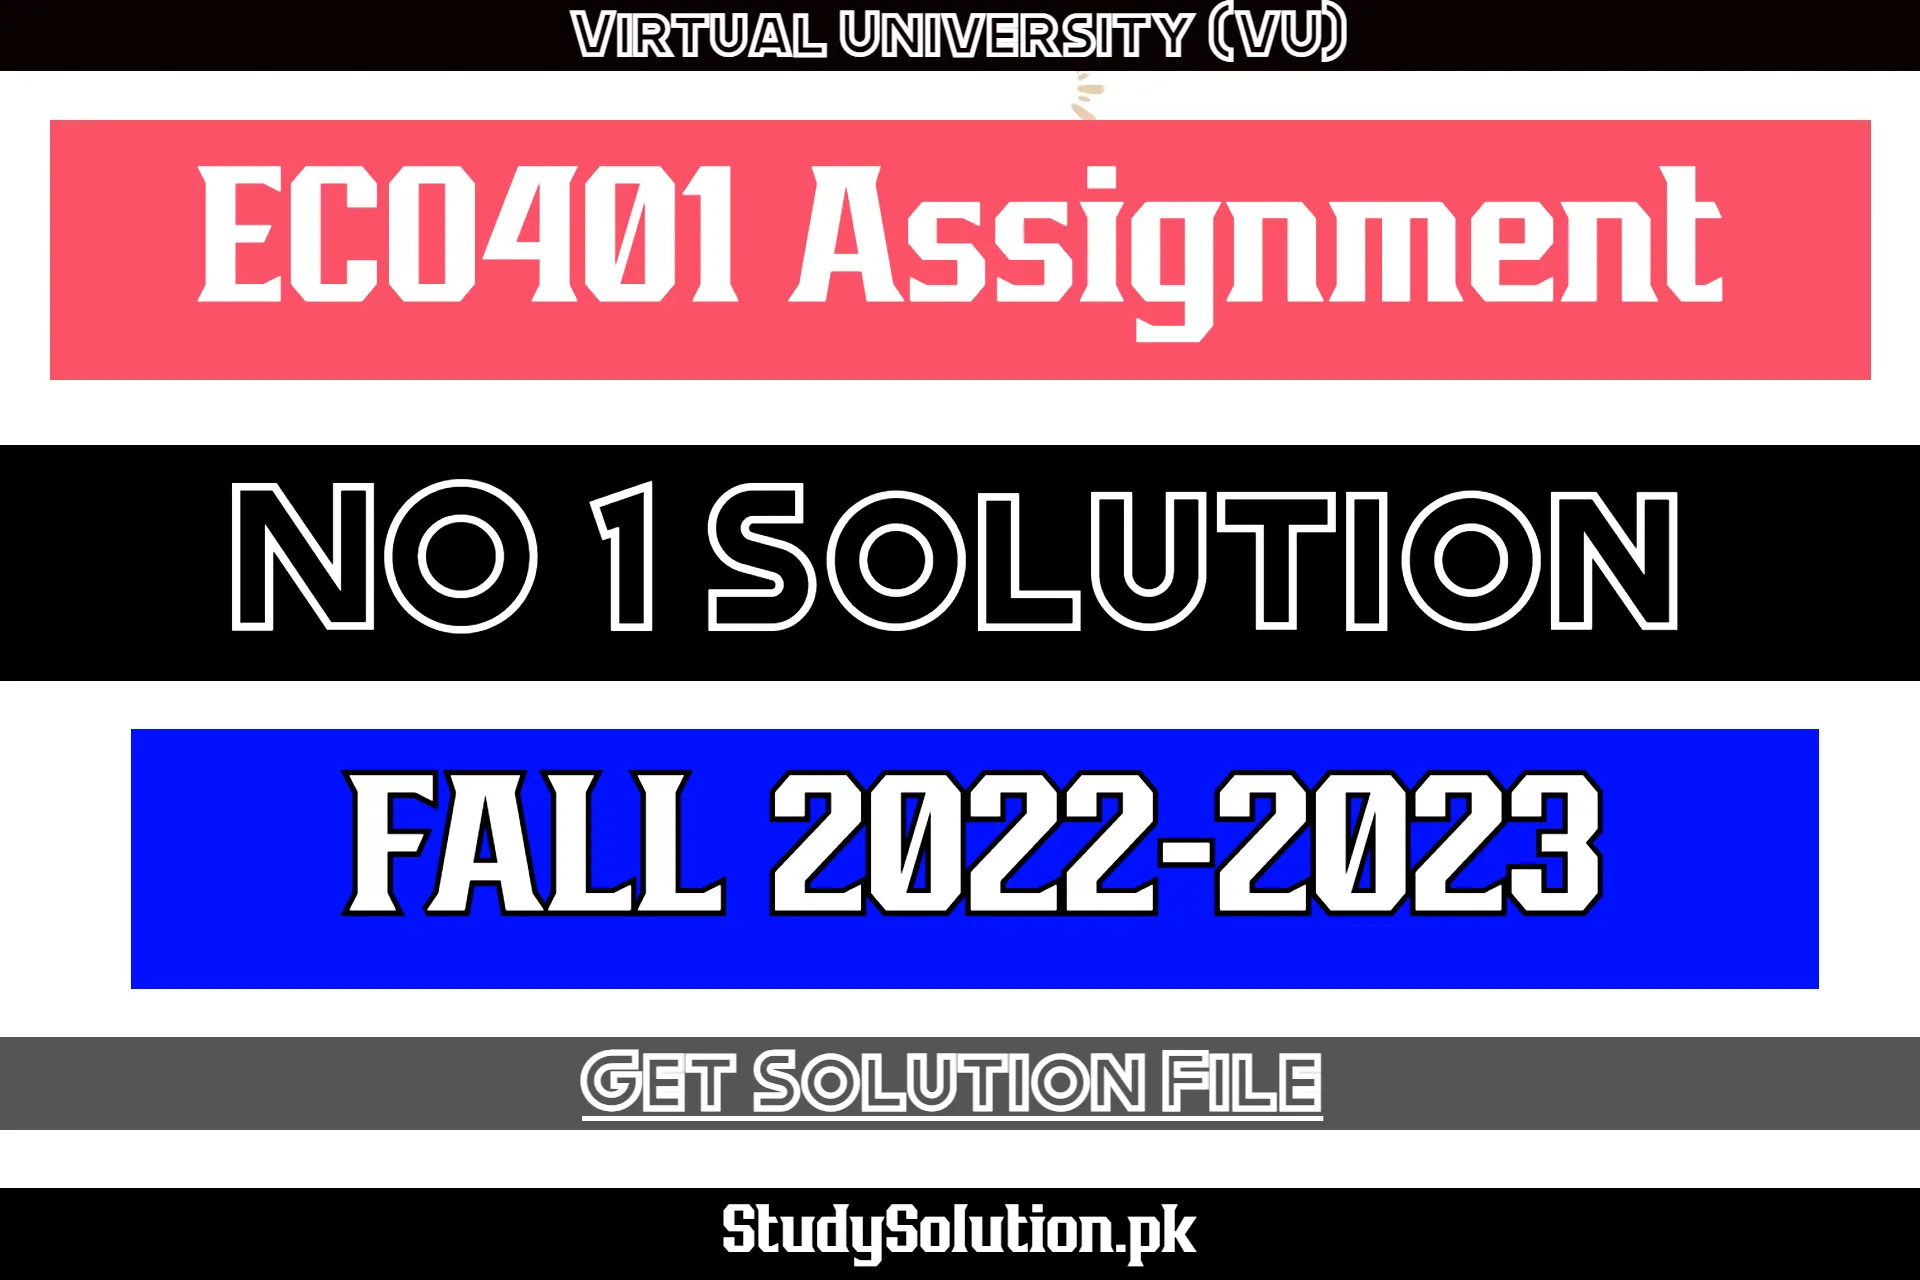 ECO401 Assignment No 1 Solution Fall 2022